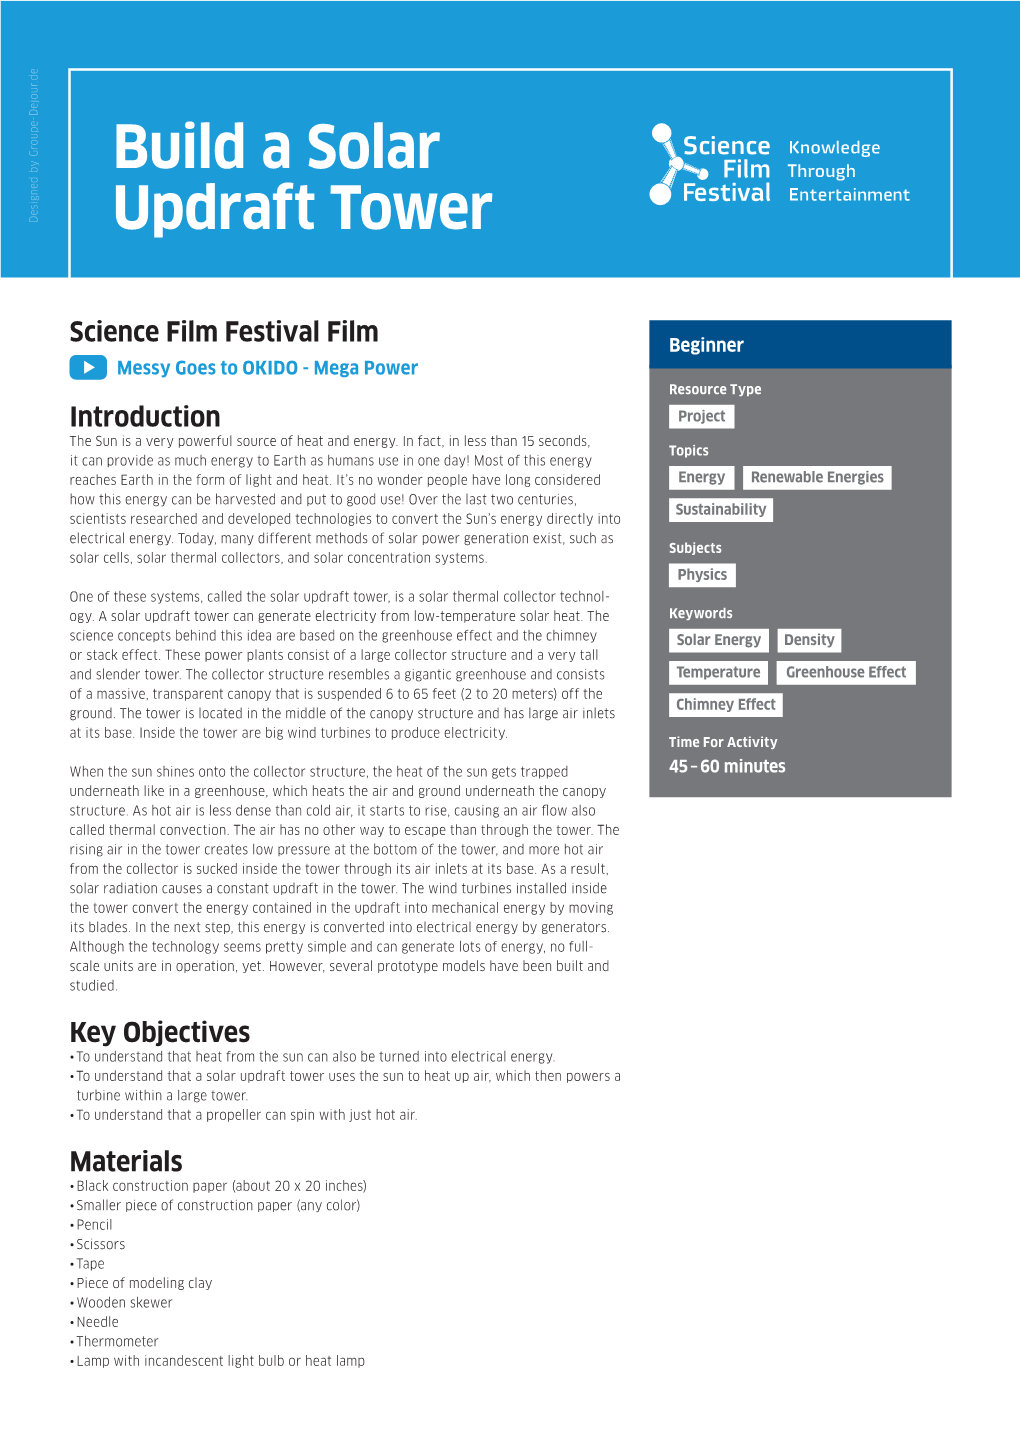 Build a Solar Updraft Tower PDF 242 KB